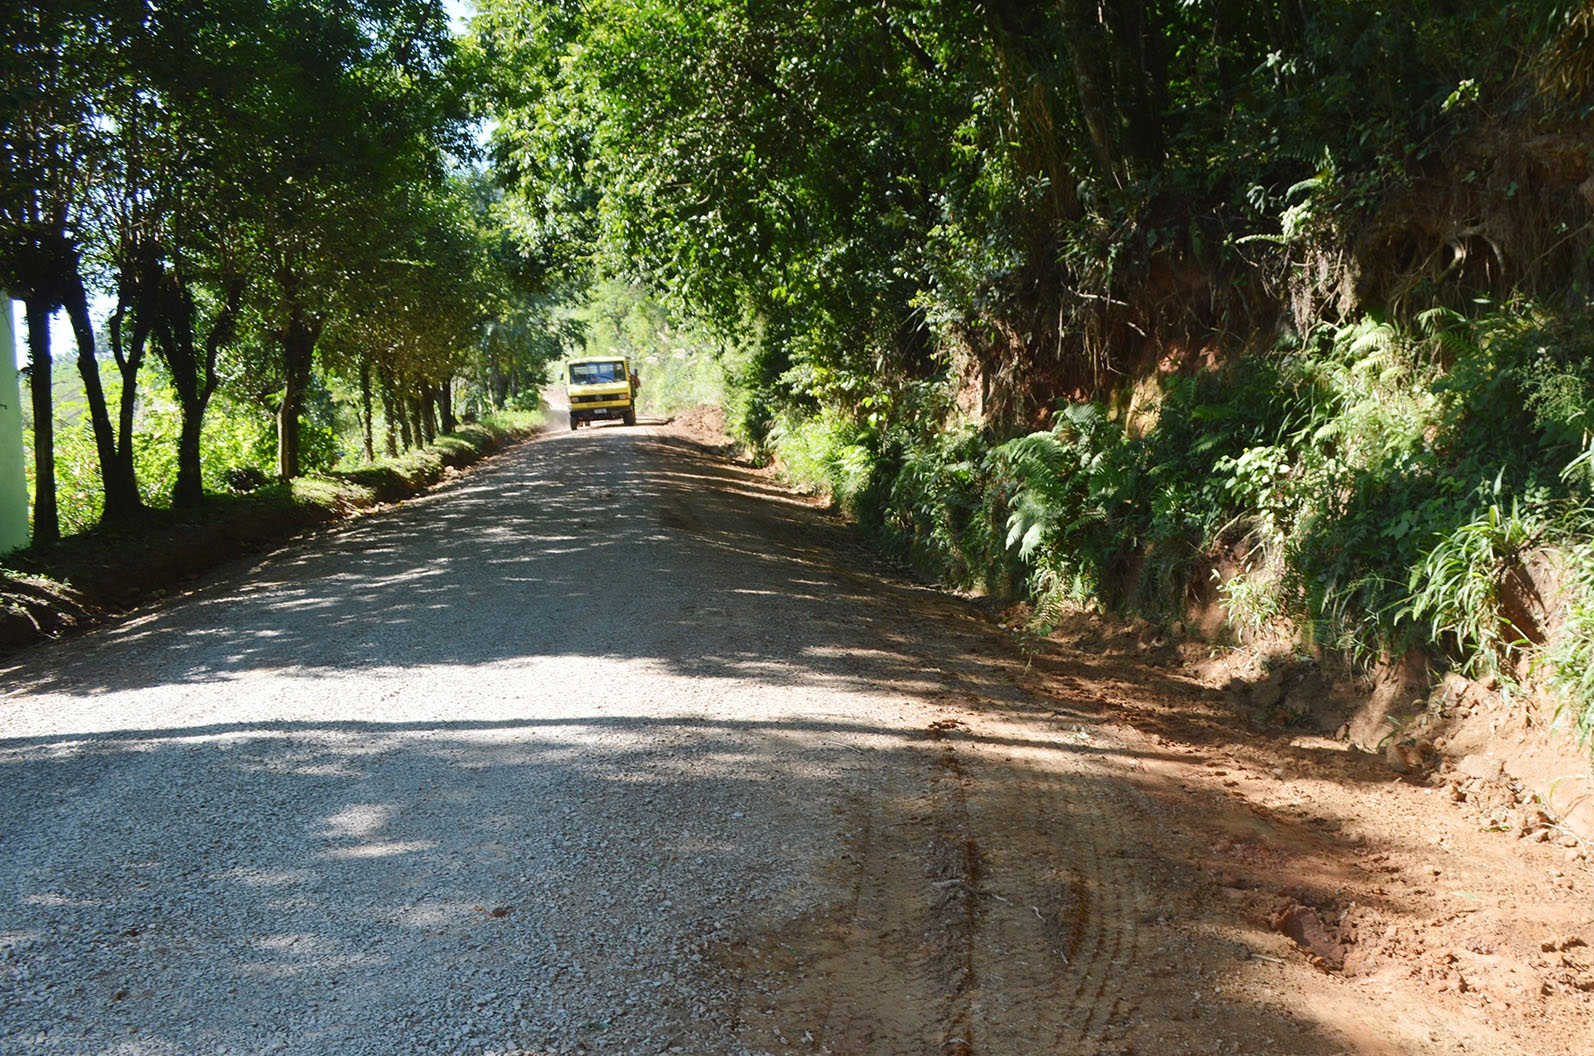 Obras recebem melhorias visando o período de safra. - Prefeitura de Flores da Cunha/Divulgação